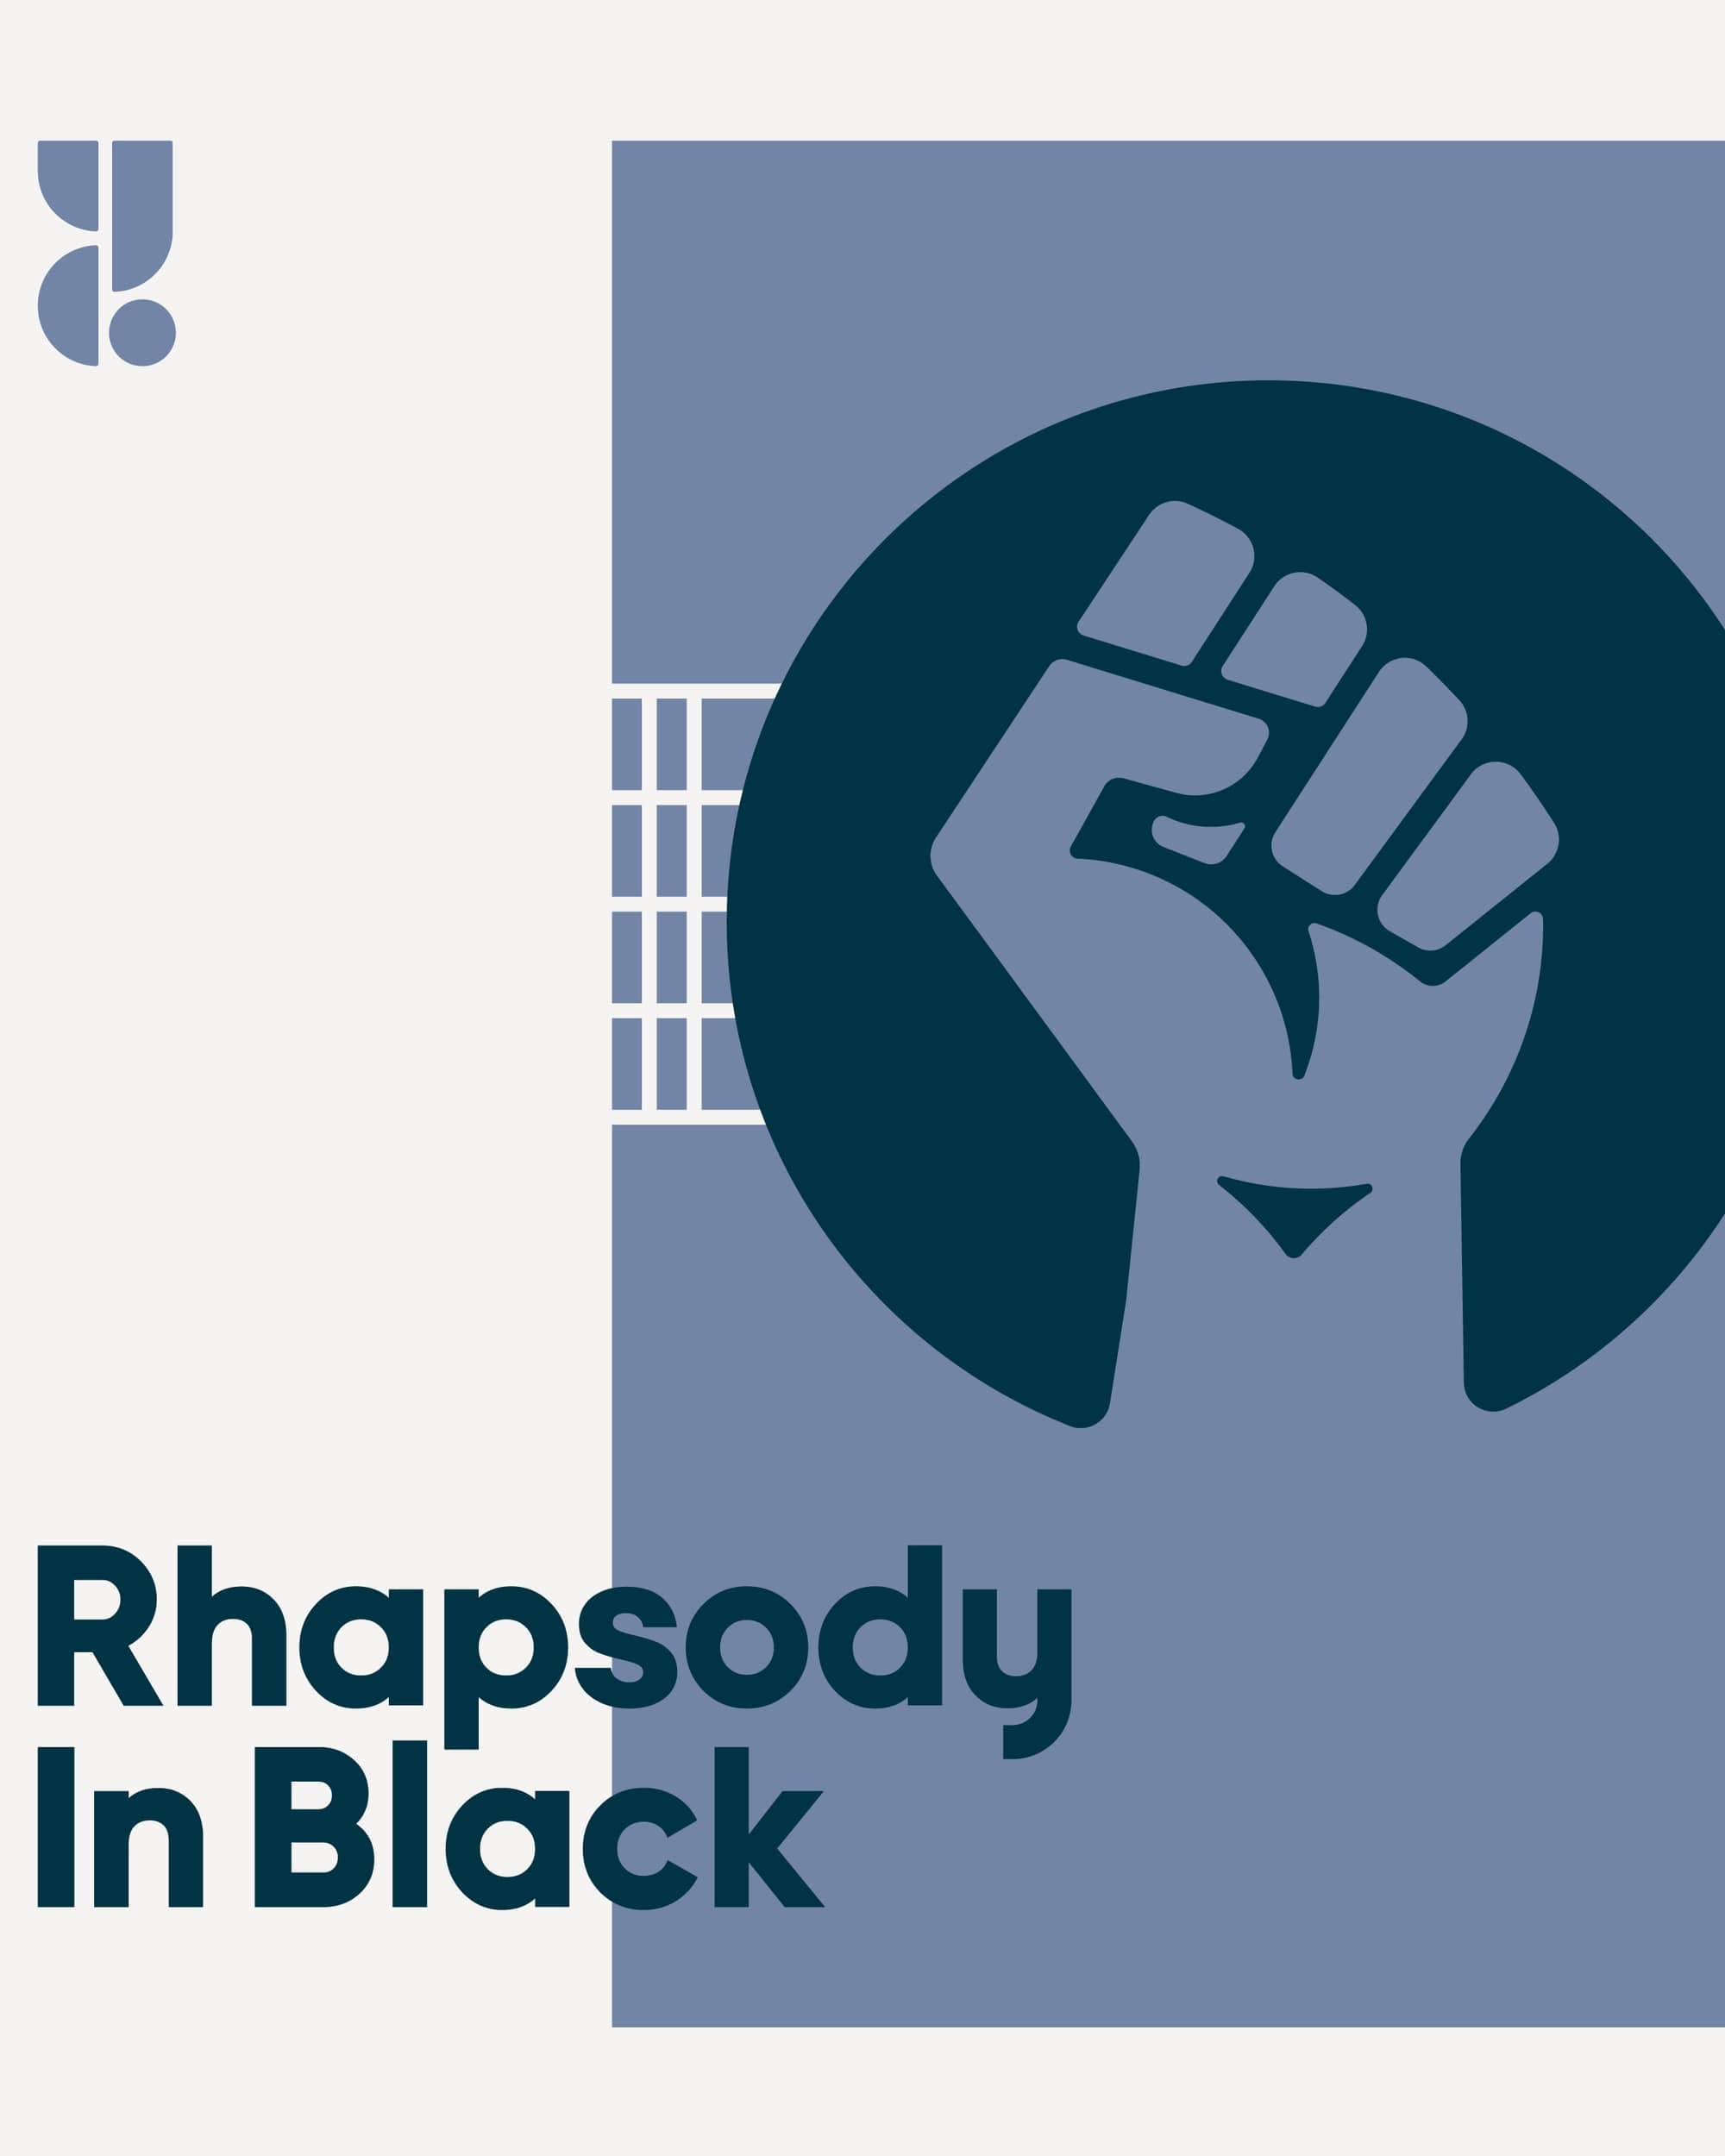 Rhapsody in Black logo